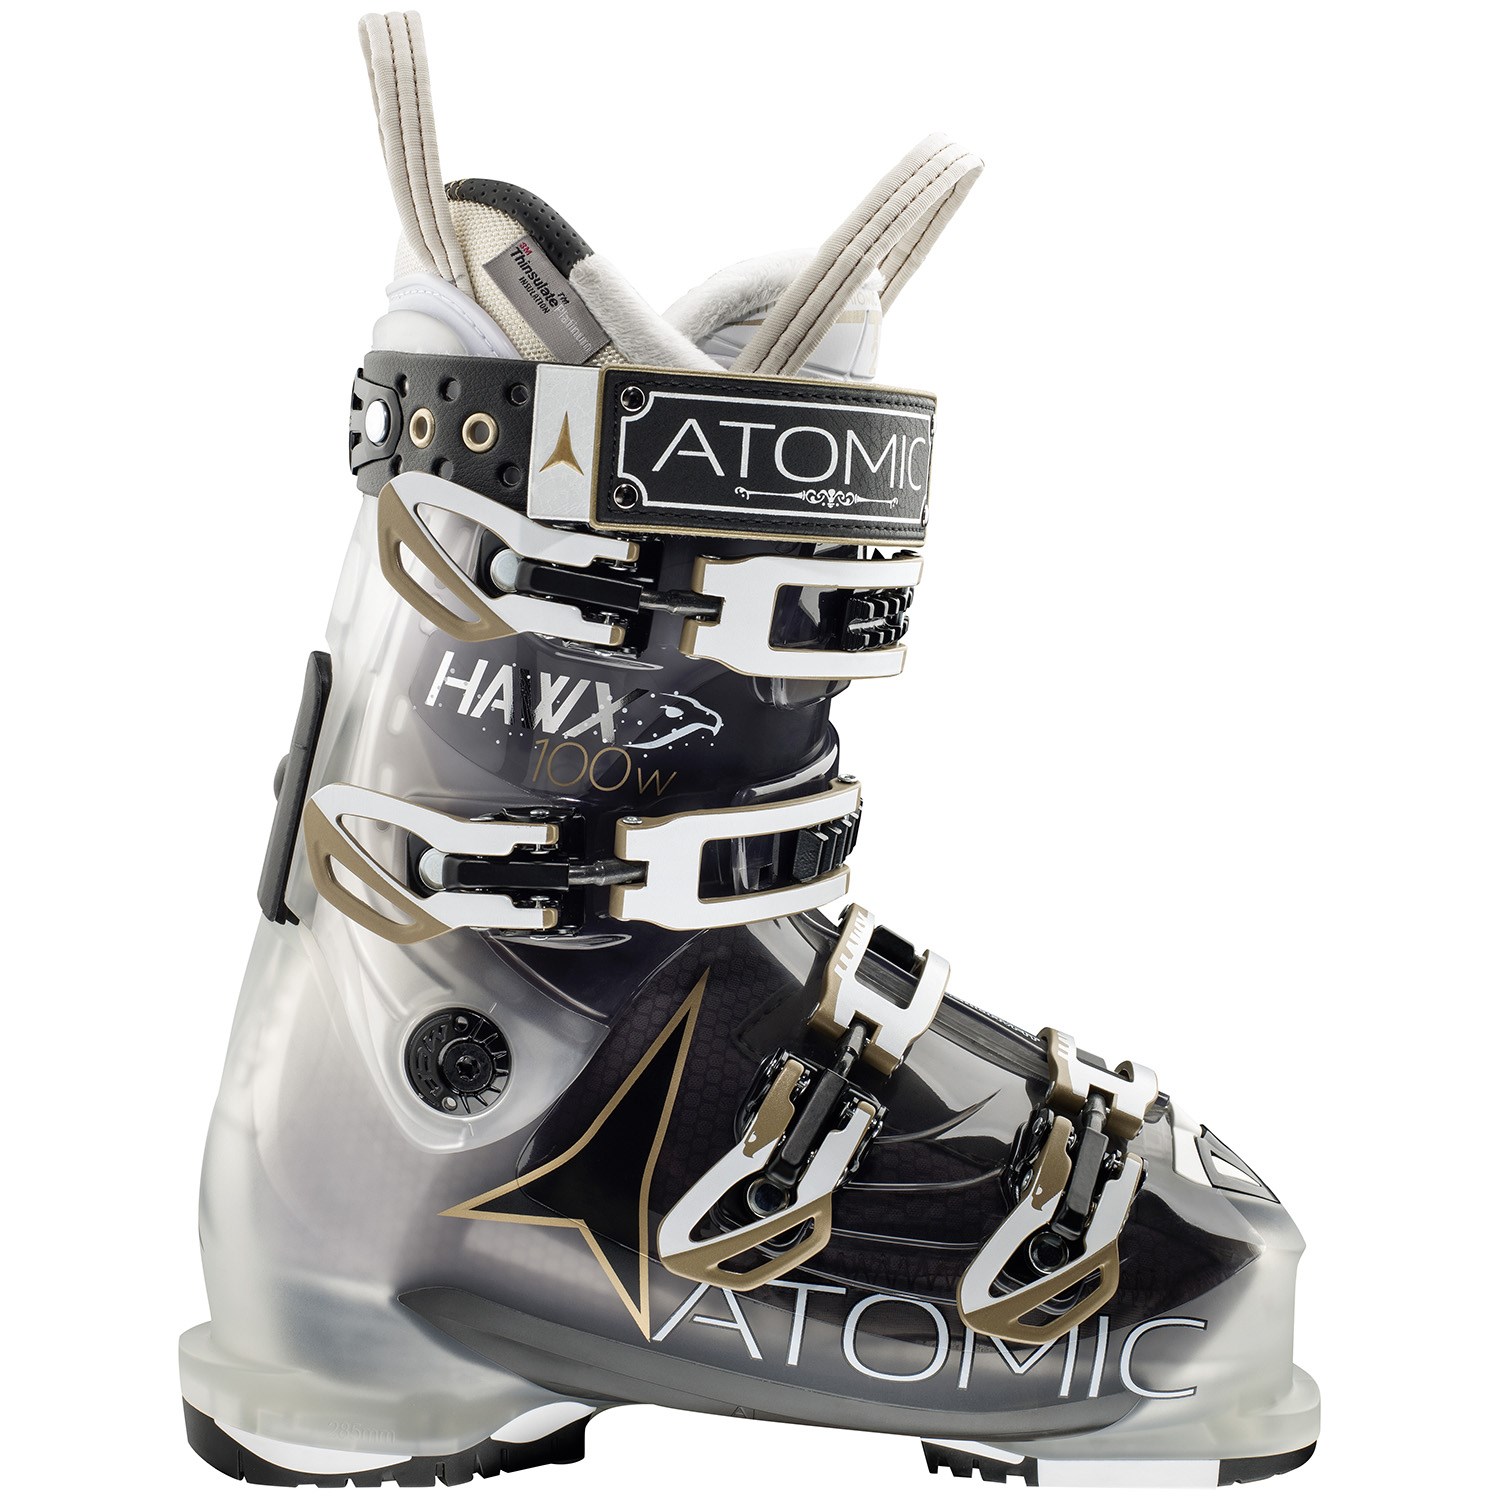 Atomic Hawx 100 Ski Boots Women's Sz 22.5 Brand New Smoke/Black Tr 